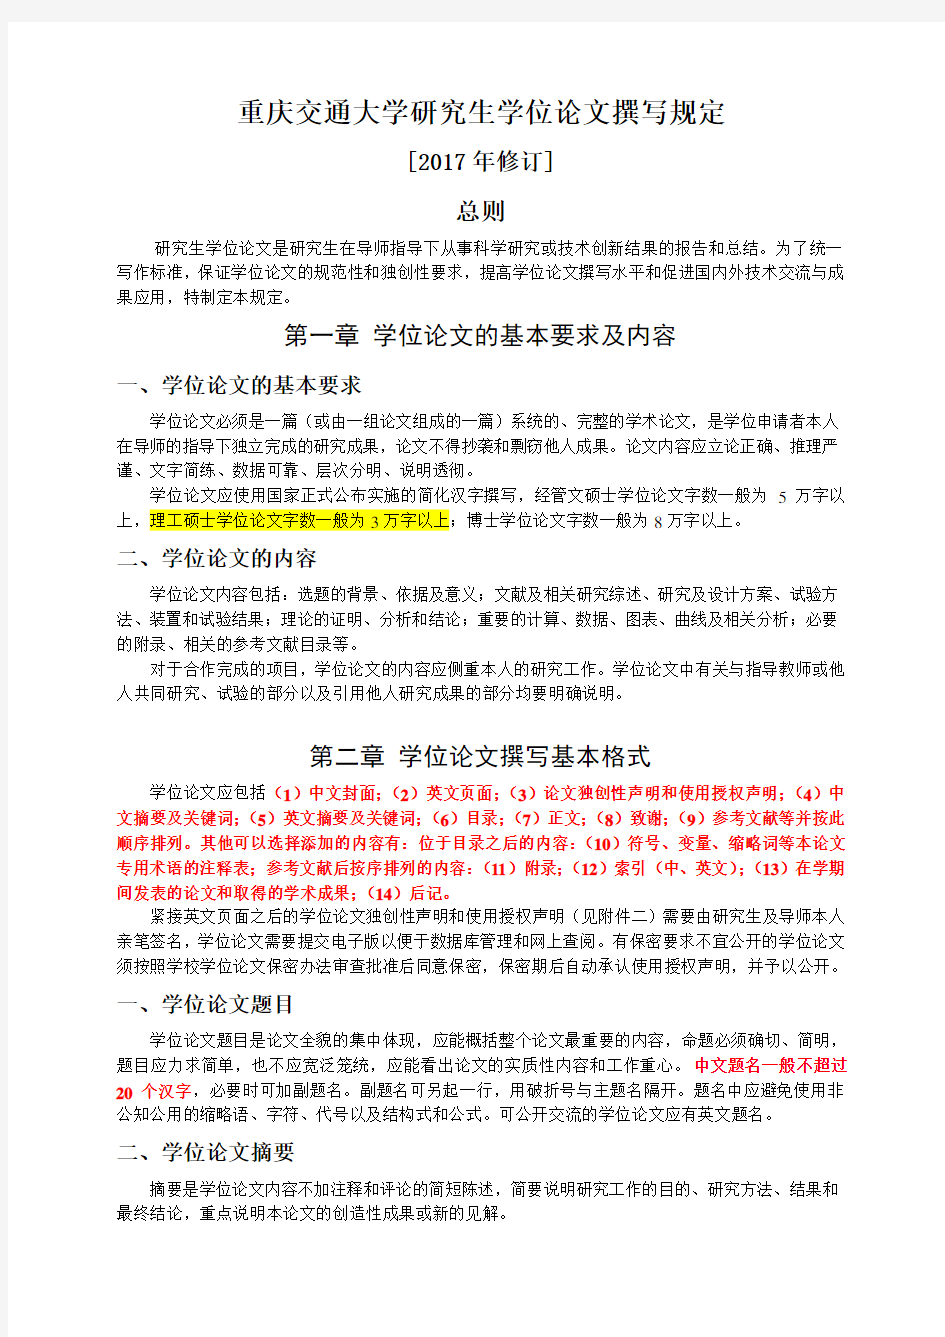 最新版-重庆交通大学研究生学位论文撰写规定